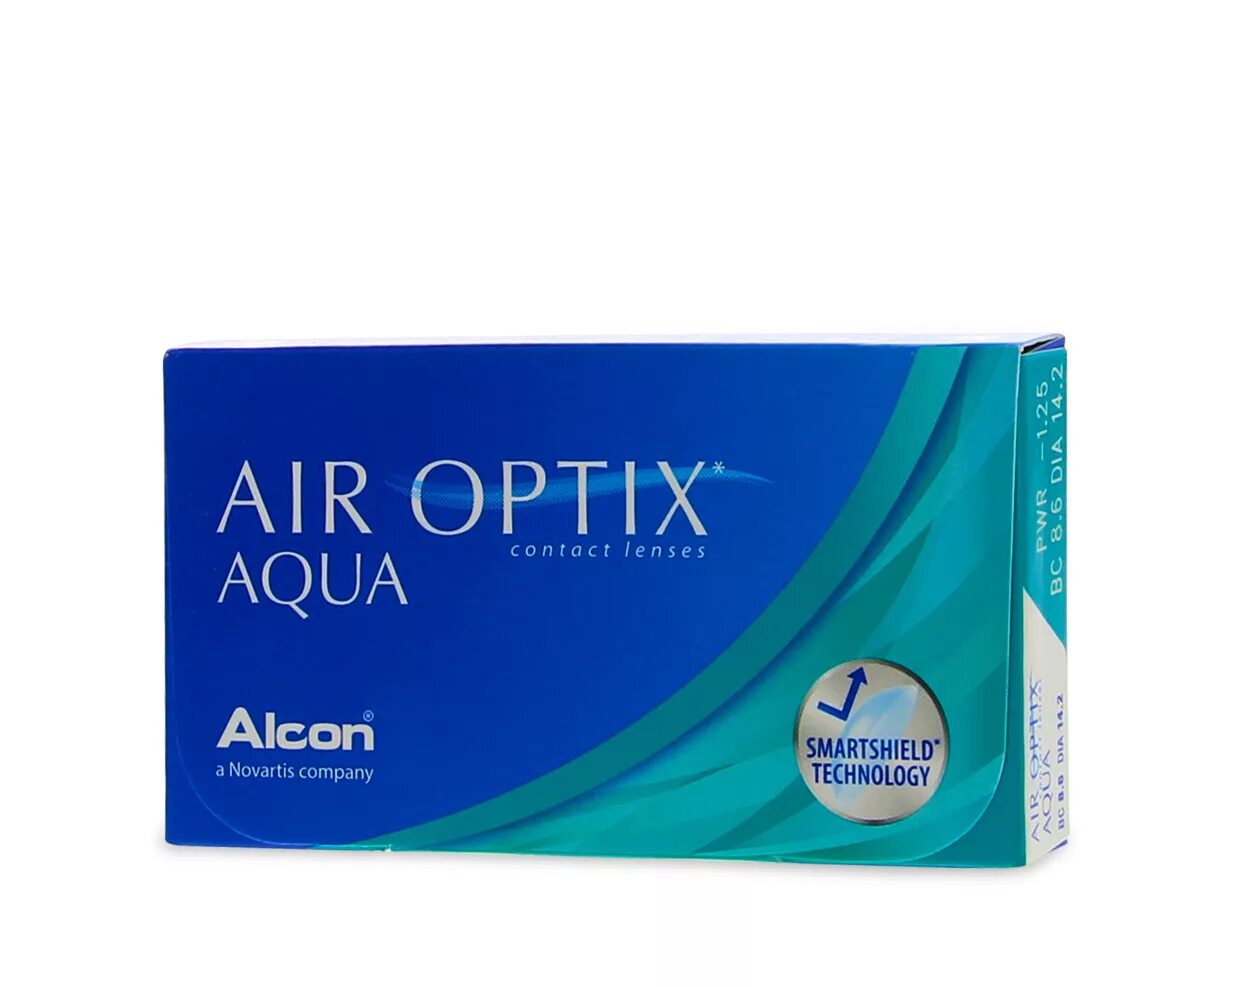 Air Optix Aqua. Линзы Alcon Air Optix Aqua. Линзы контактные Air Optix Aqua 3pk (d-14,2) BC 8,6 -3,75. Линзы Alcon Air Optix Aqua ежедневные.